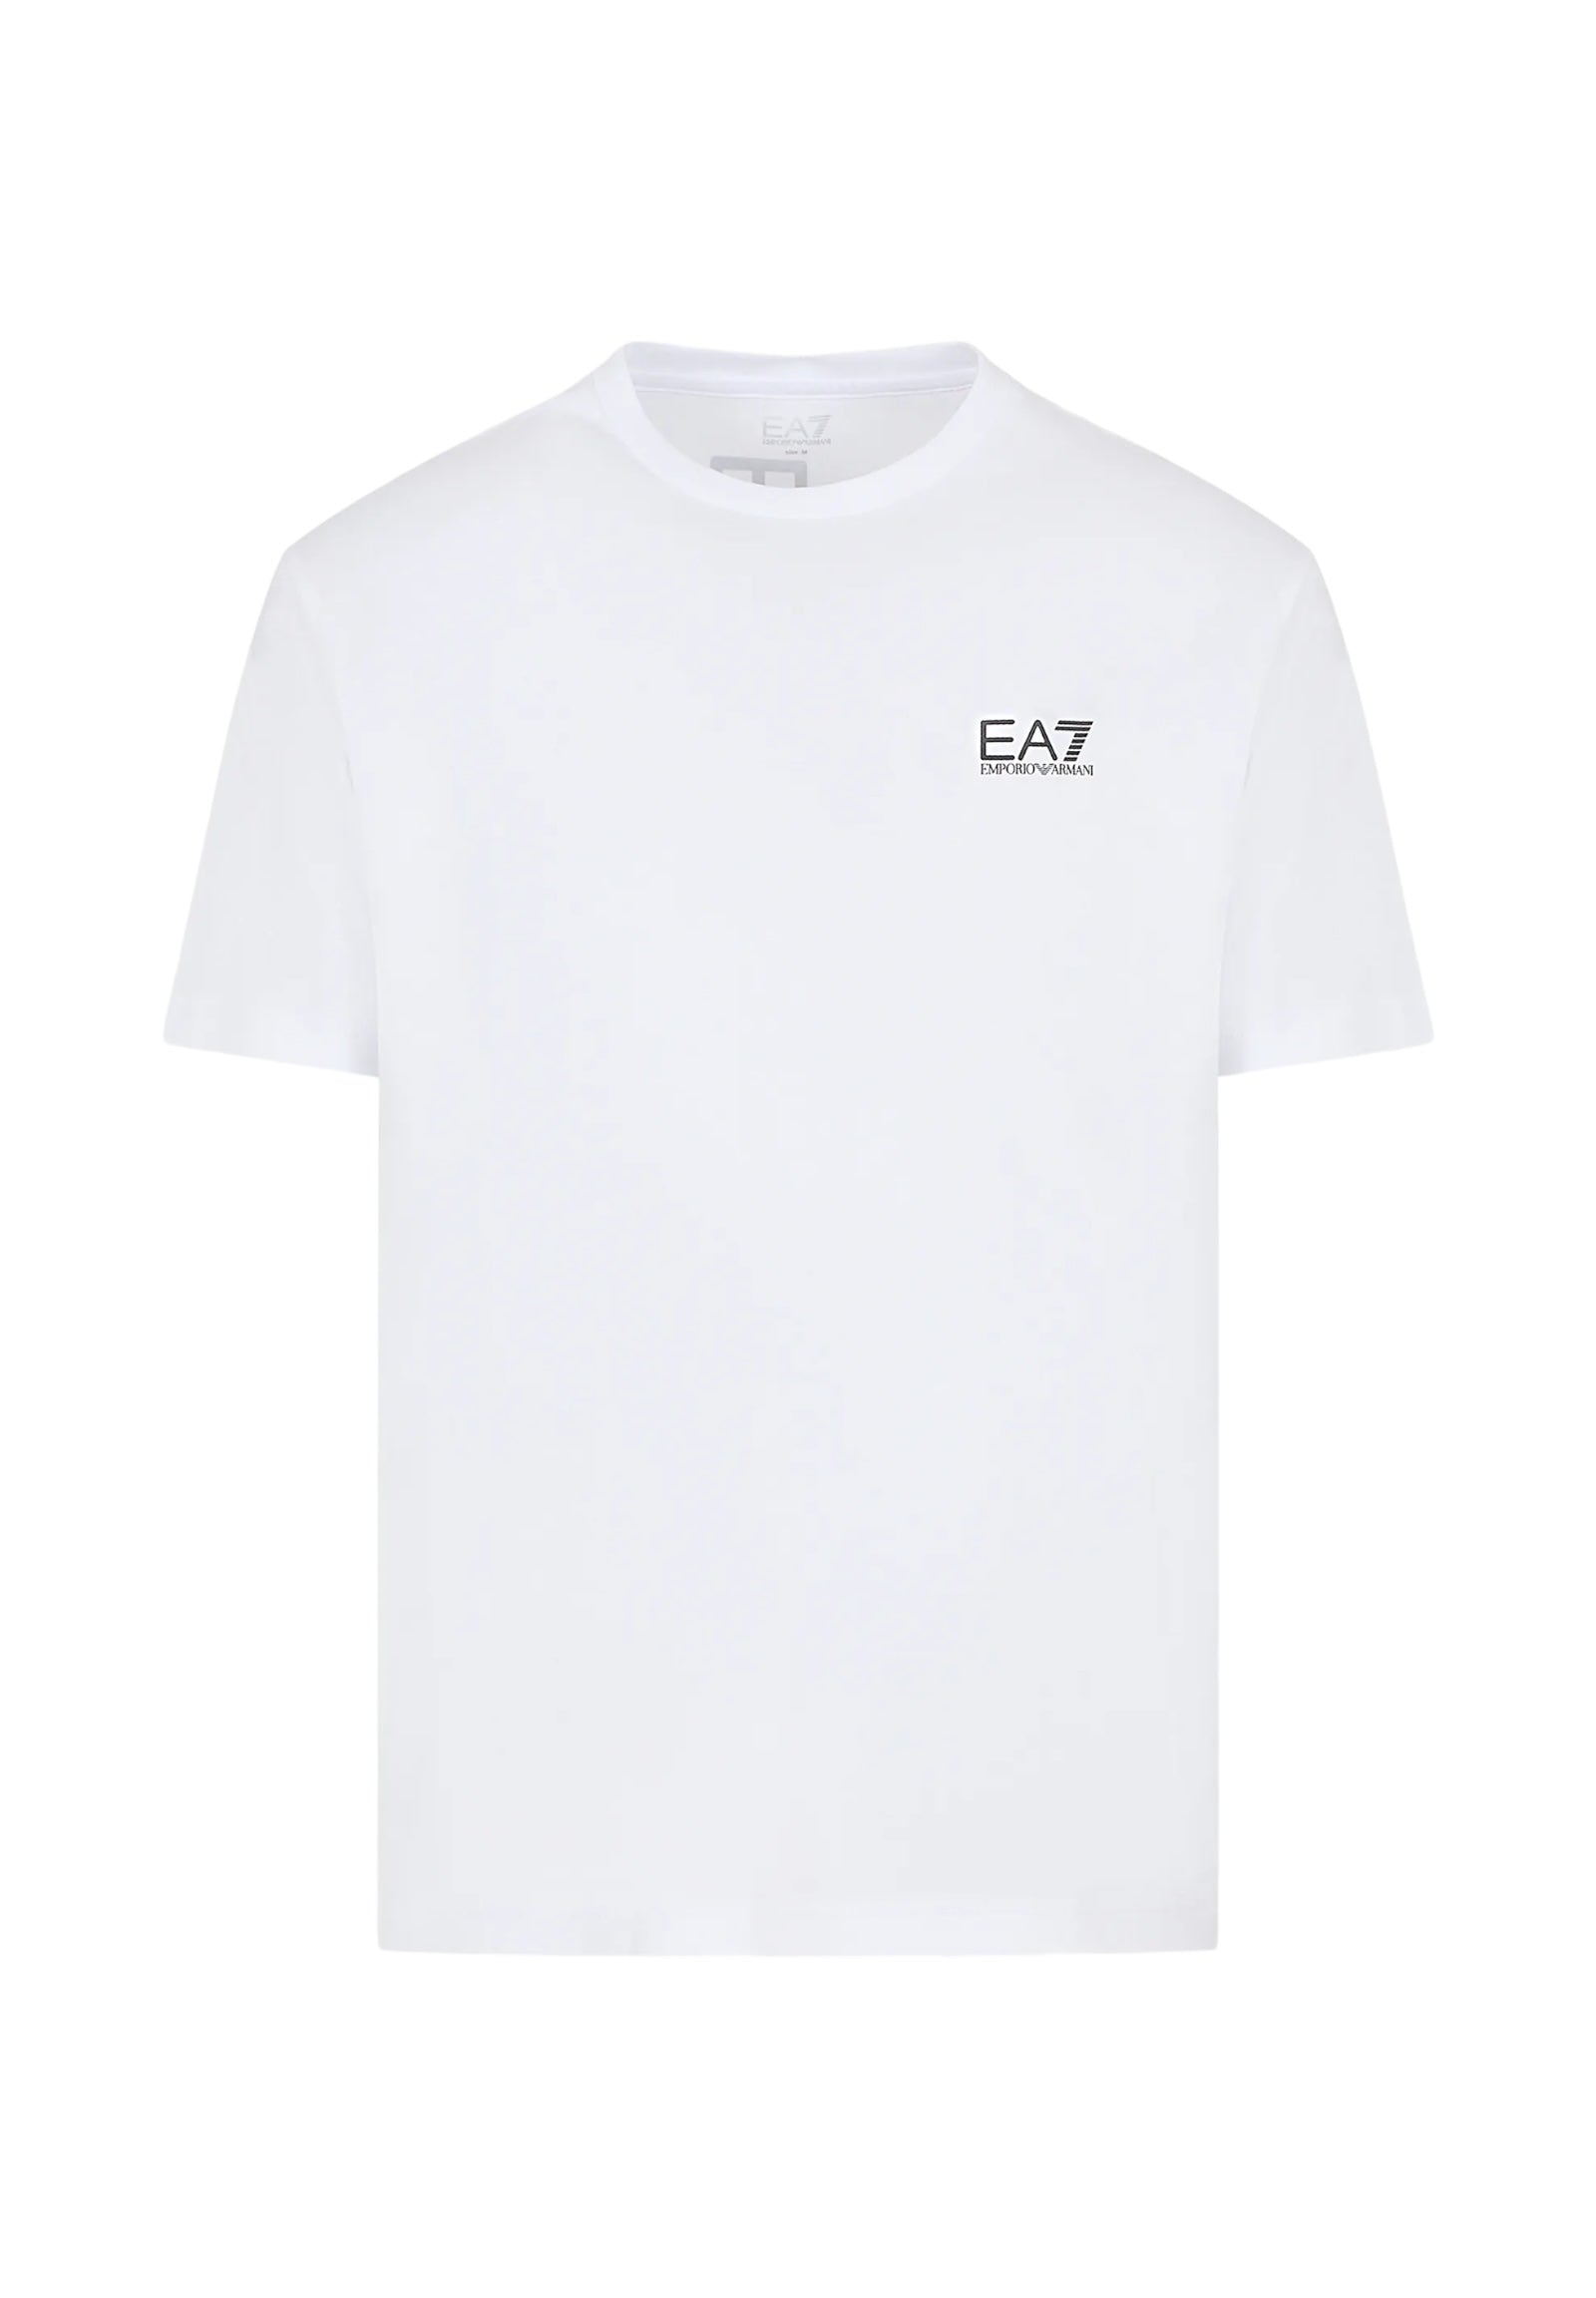 Ea7 Emporio Armani T-Shirt* 8npt18 White